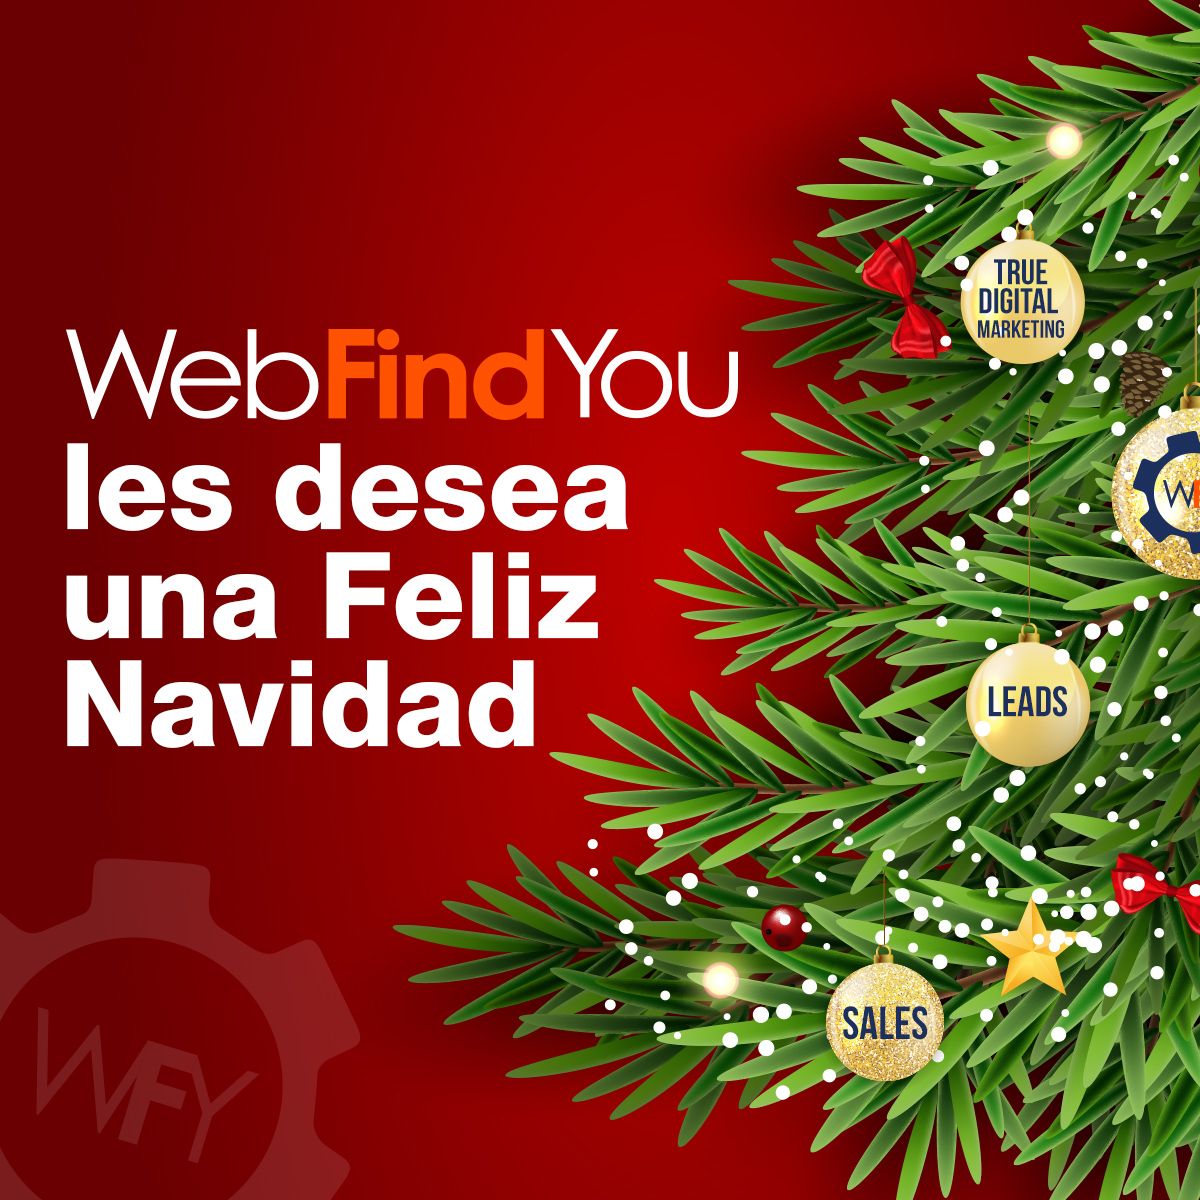 WebFindYou les Desea una Feliz Navidad